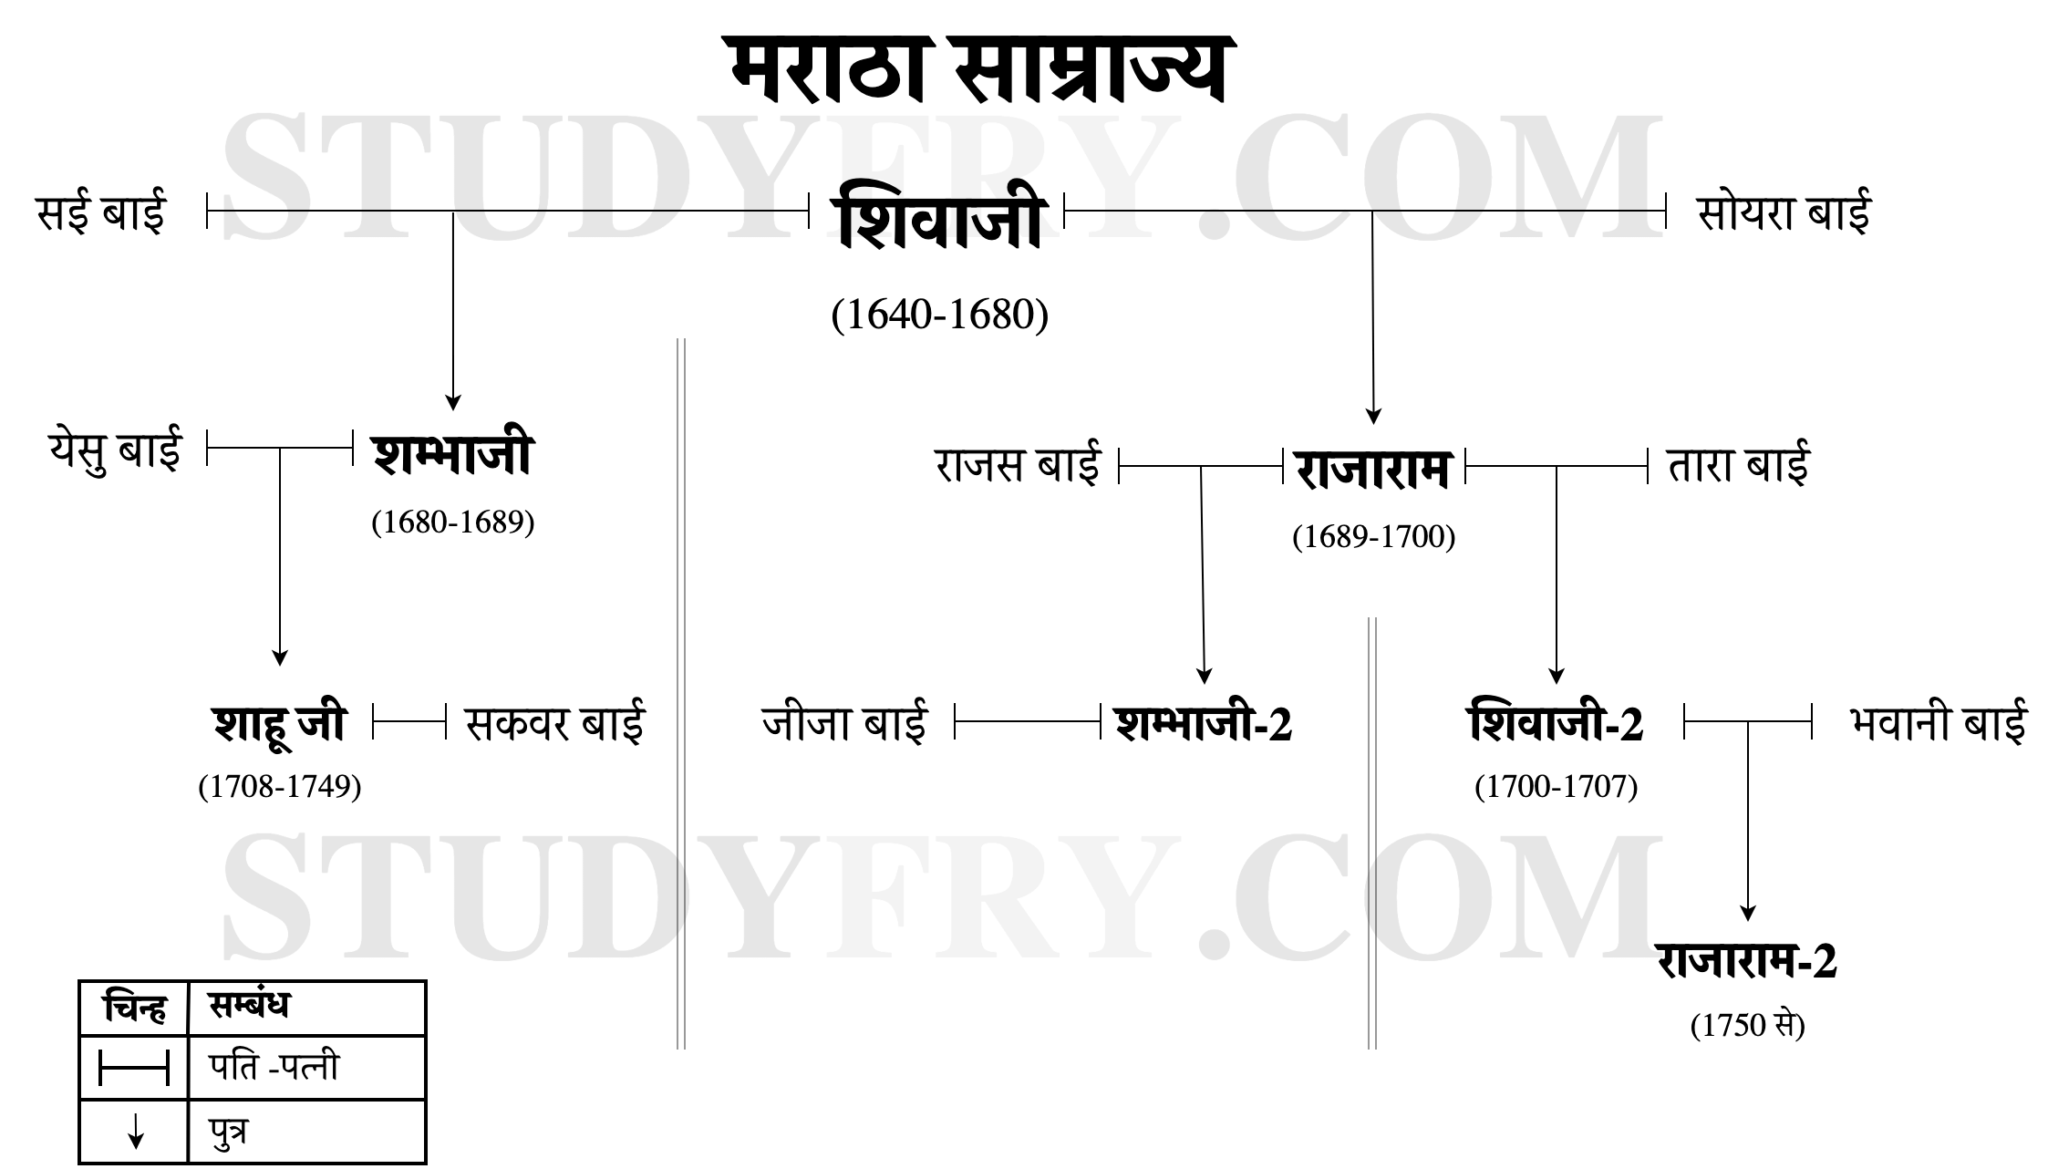 Maratha Empire Family Tree